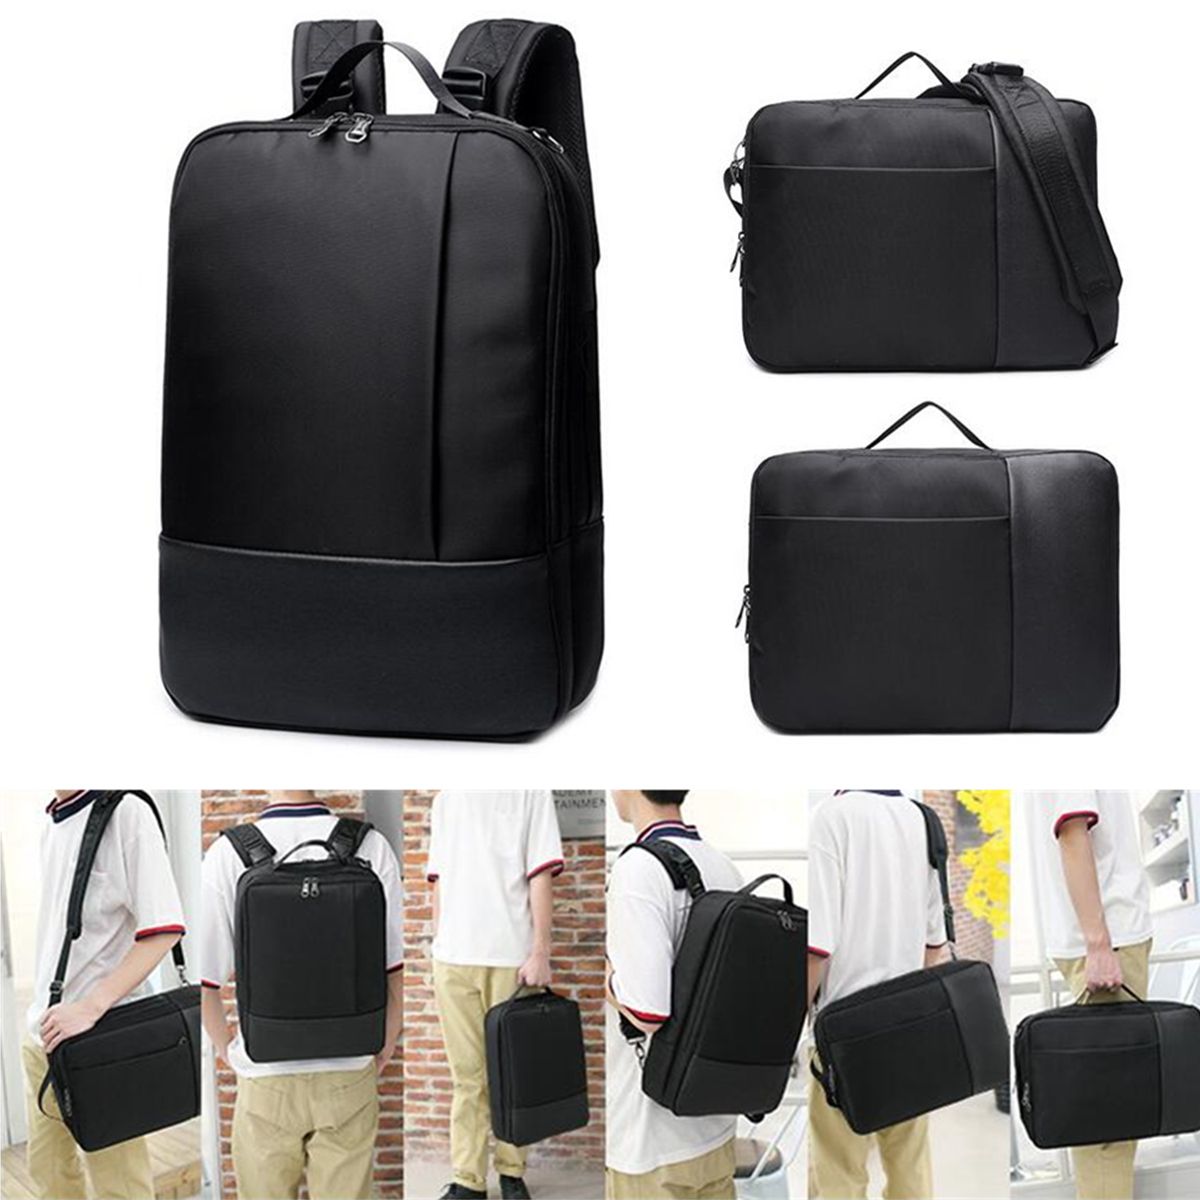 Laptop-Backpack-Mens-Shoulder-Bag-Handbag-Laptop-Bag-Casual-Large-Capacity-Travel-Backpack-for-Busin-1537820